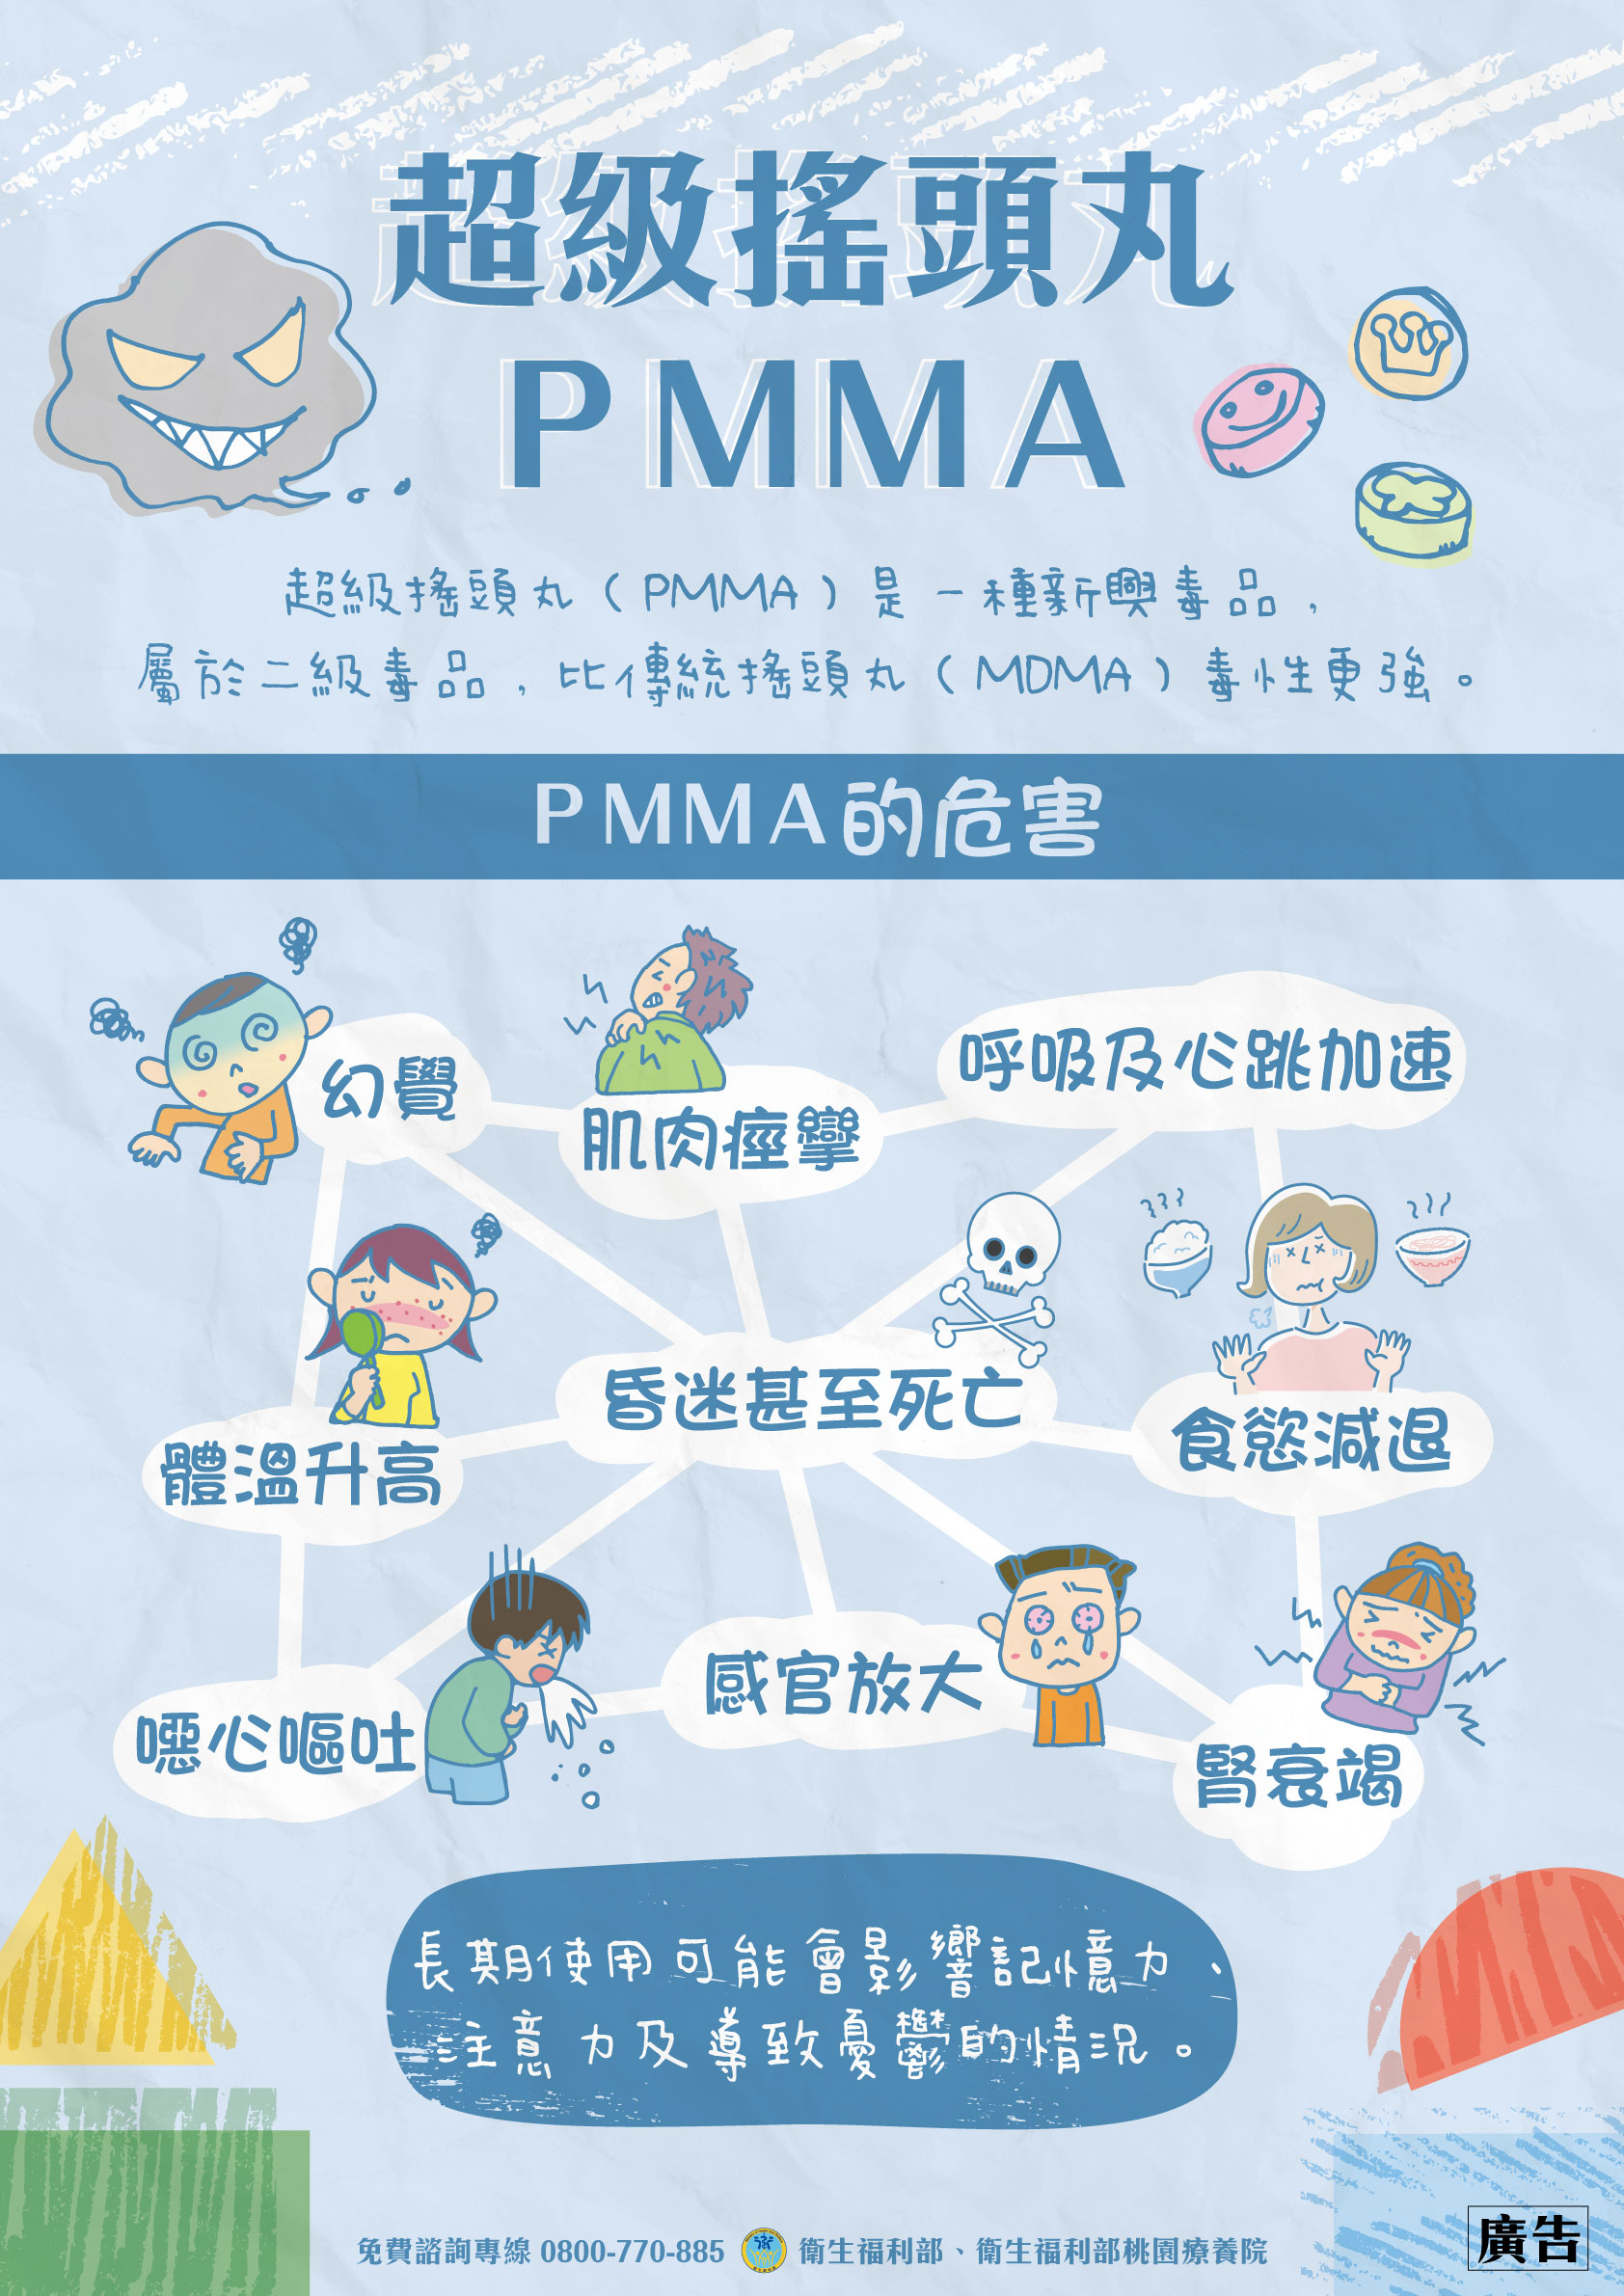 PMMA(1)